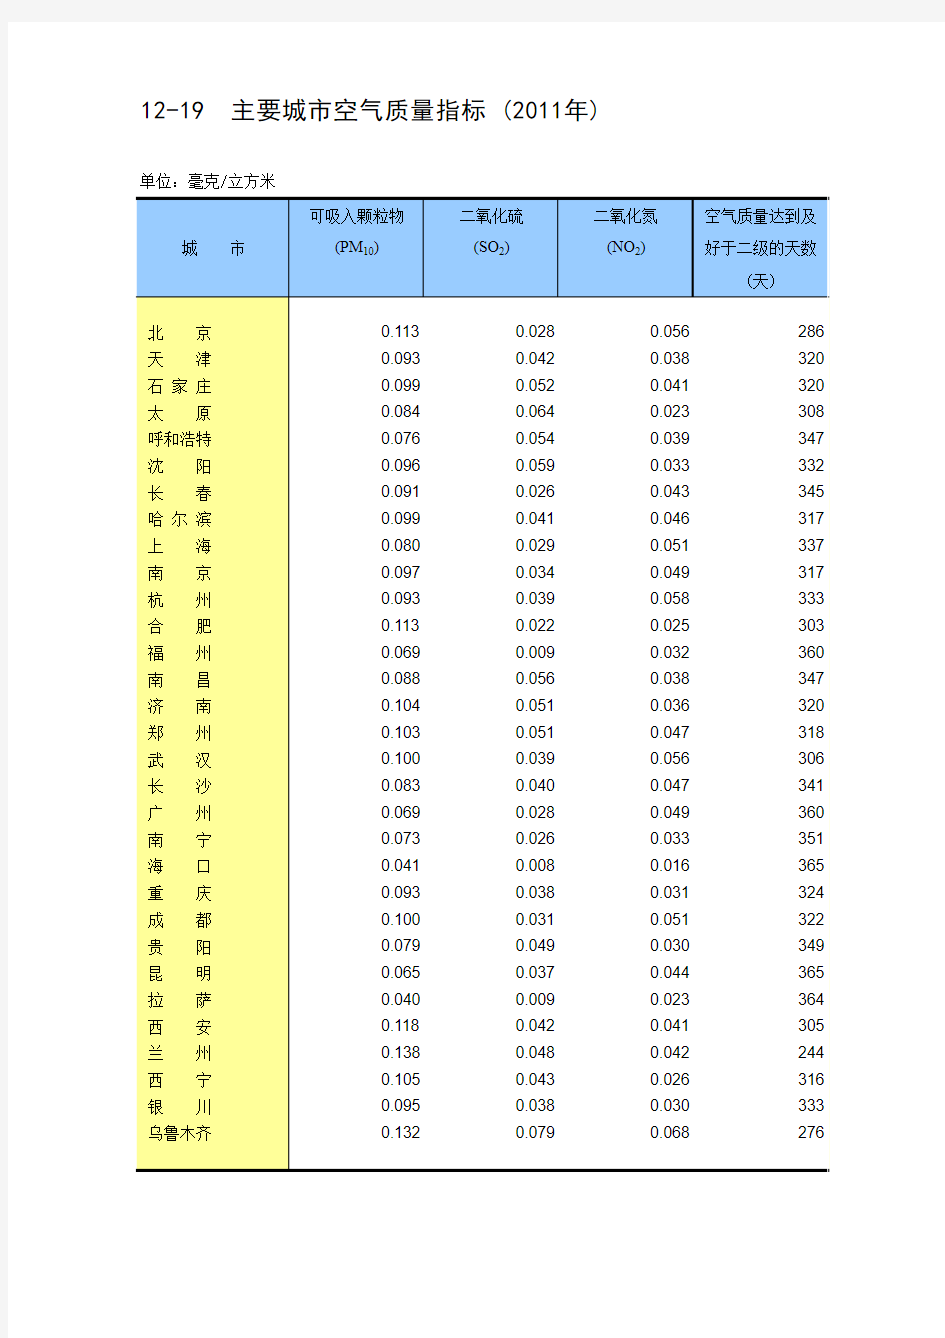 中国主要城市空气质量指标 (2011年)